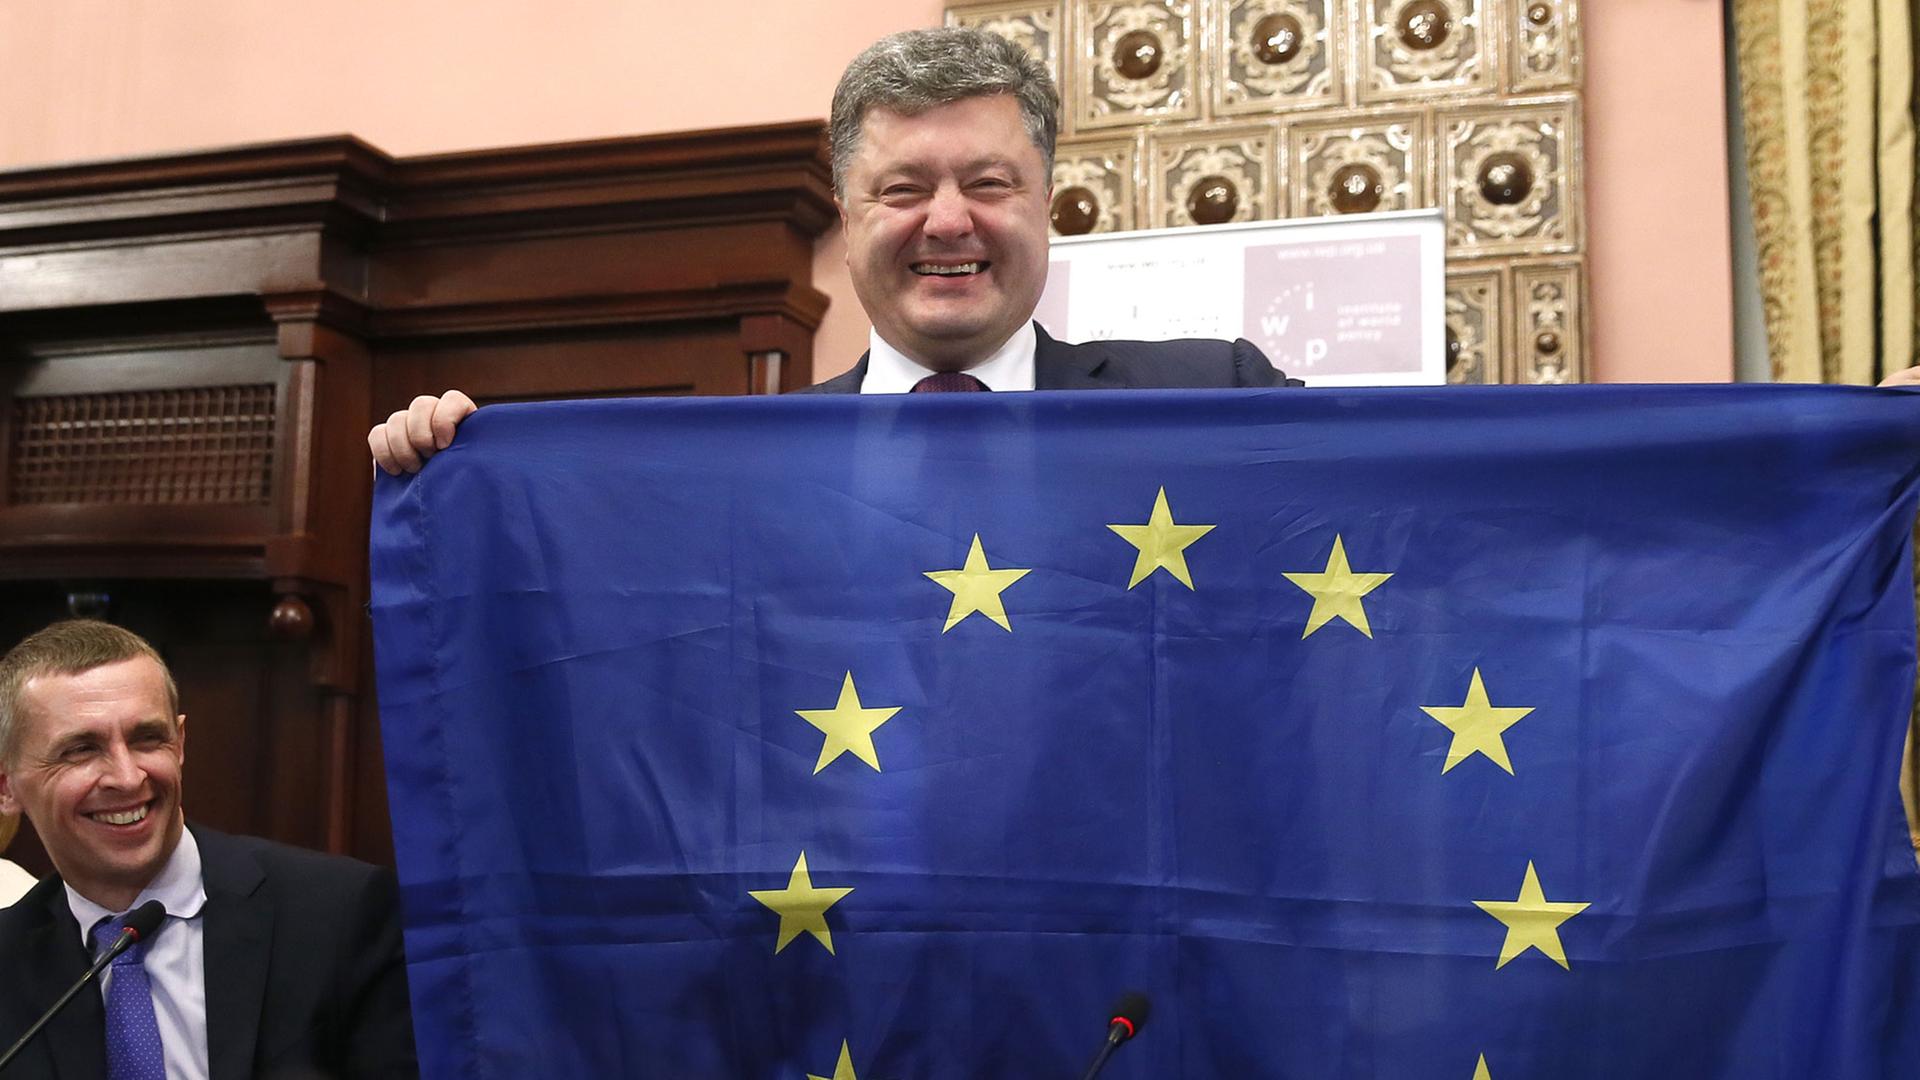 Poroschenko, ukrainischer Präsident